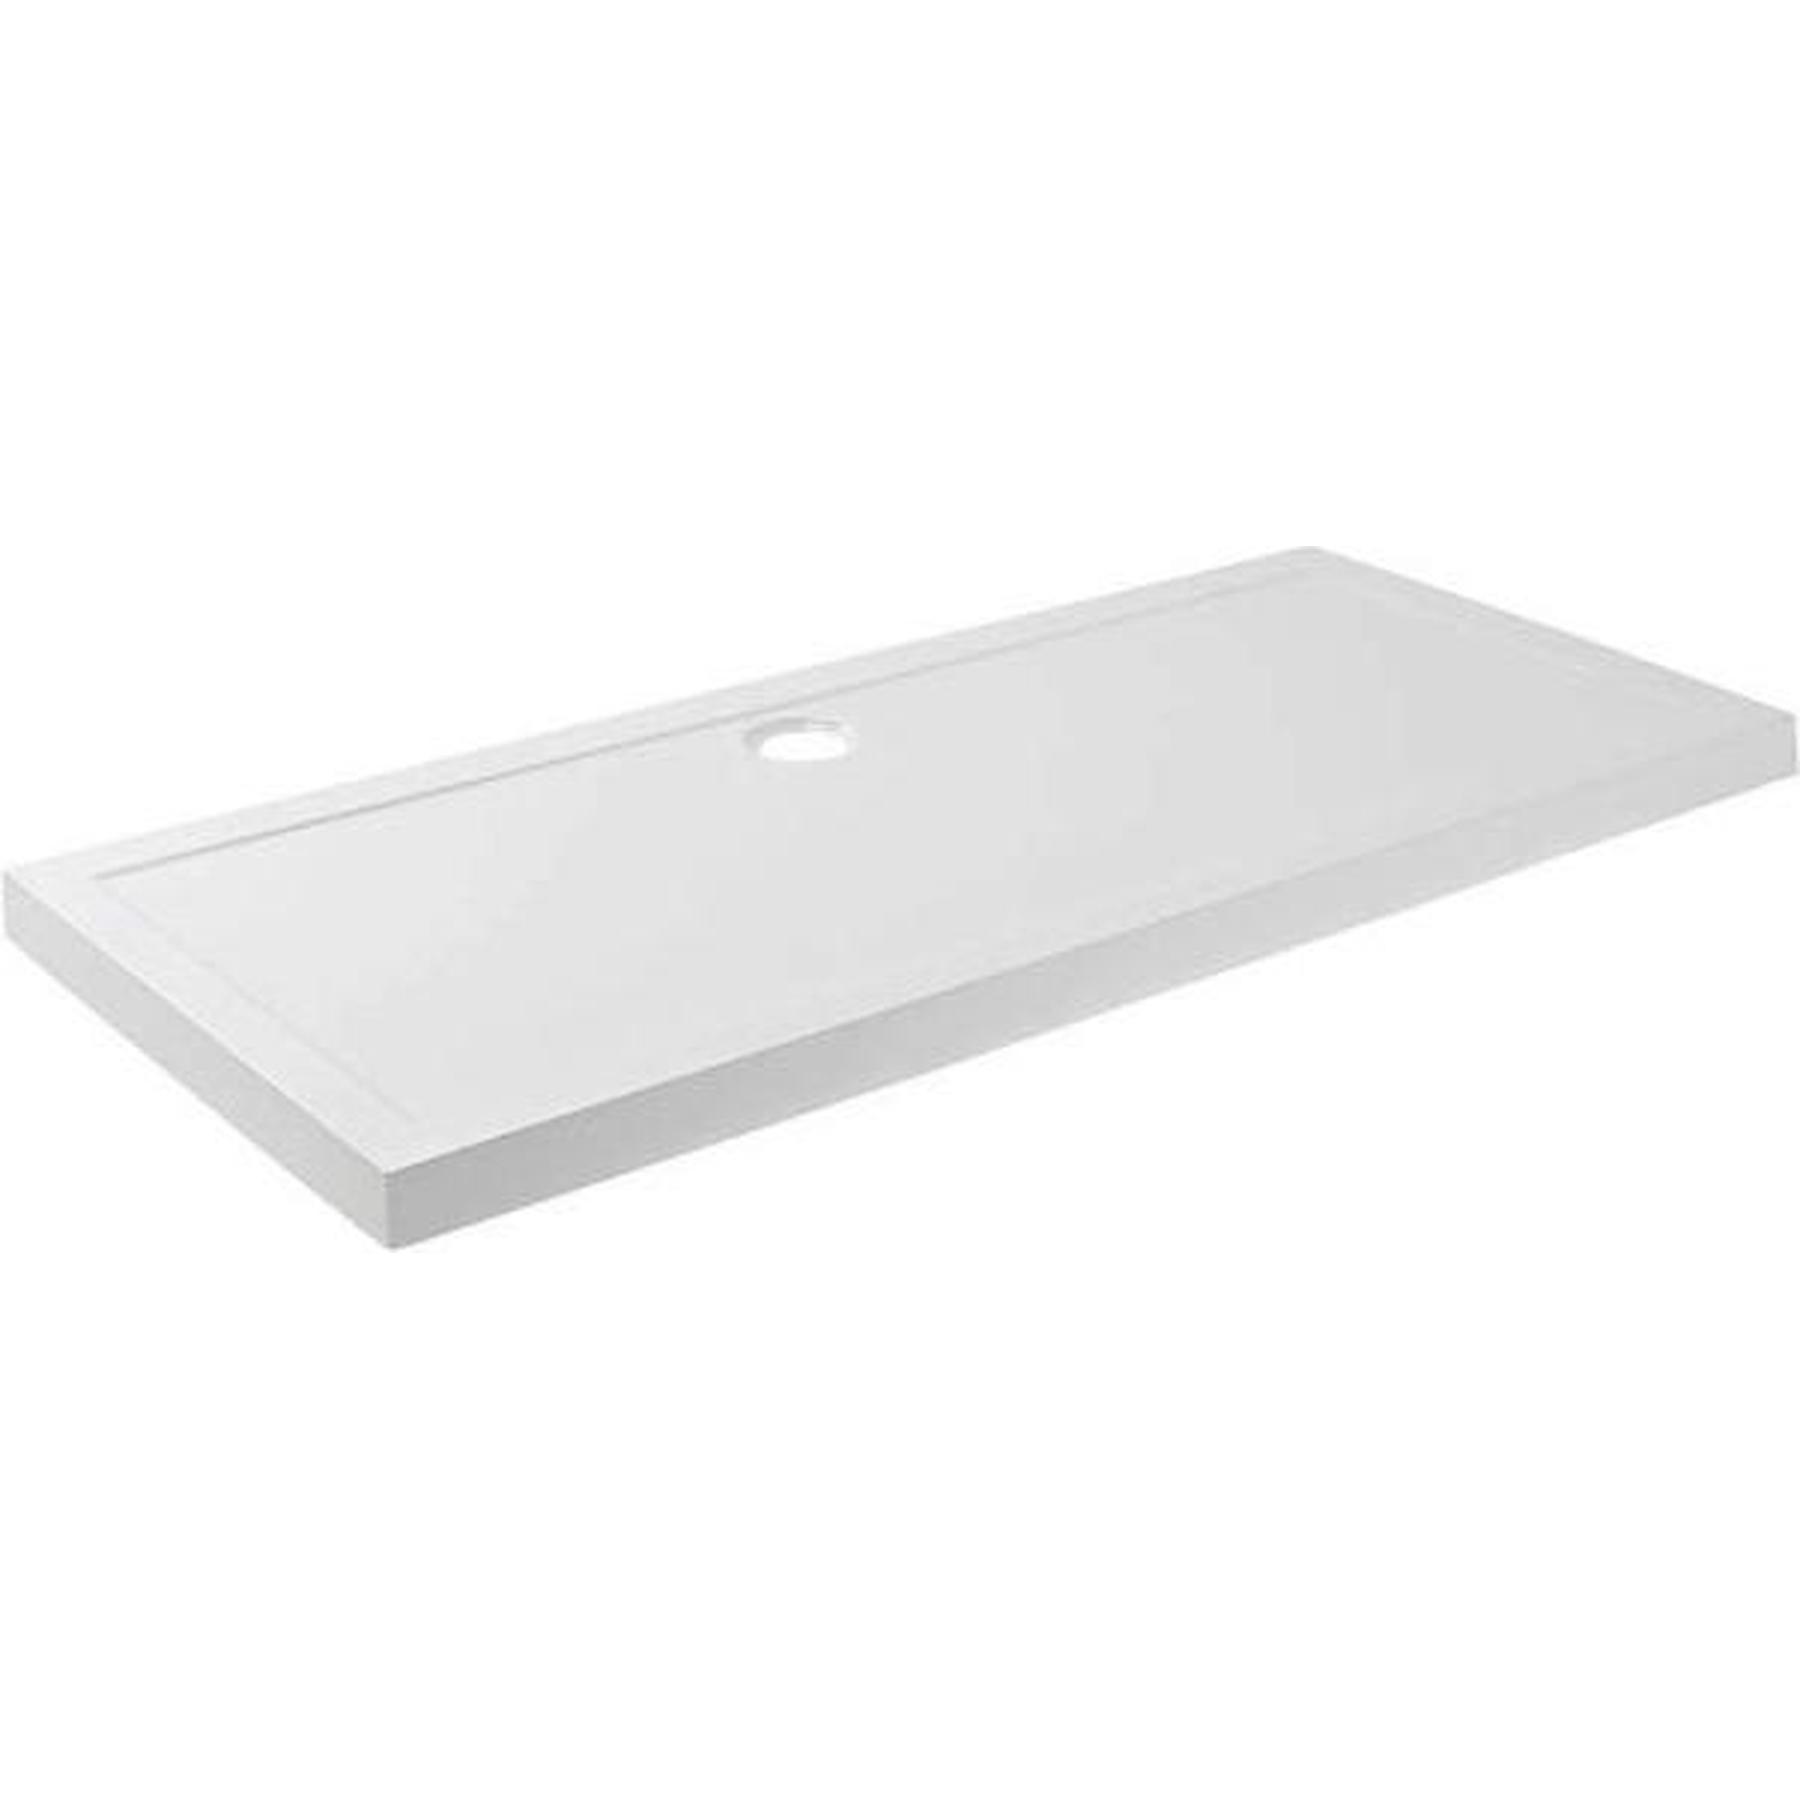 Receveur de douche acrylique Haute Densité Gamme PRO SANINDUSA Open 180x80 épaisseur 7.5cm couleur blanc   